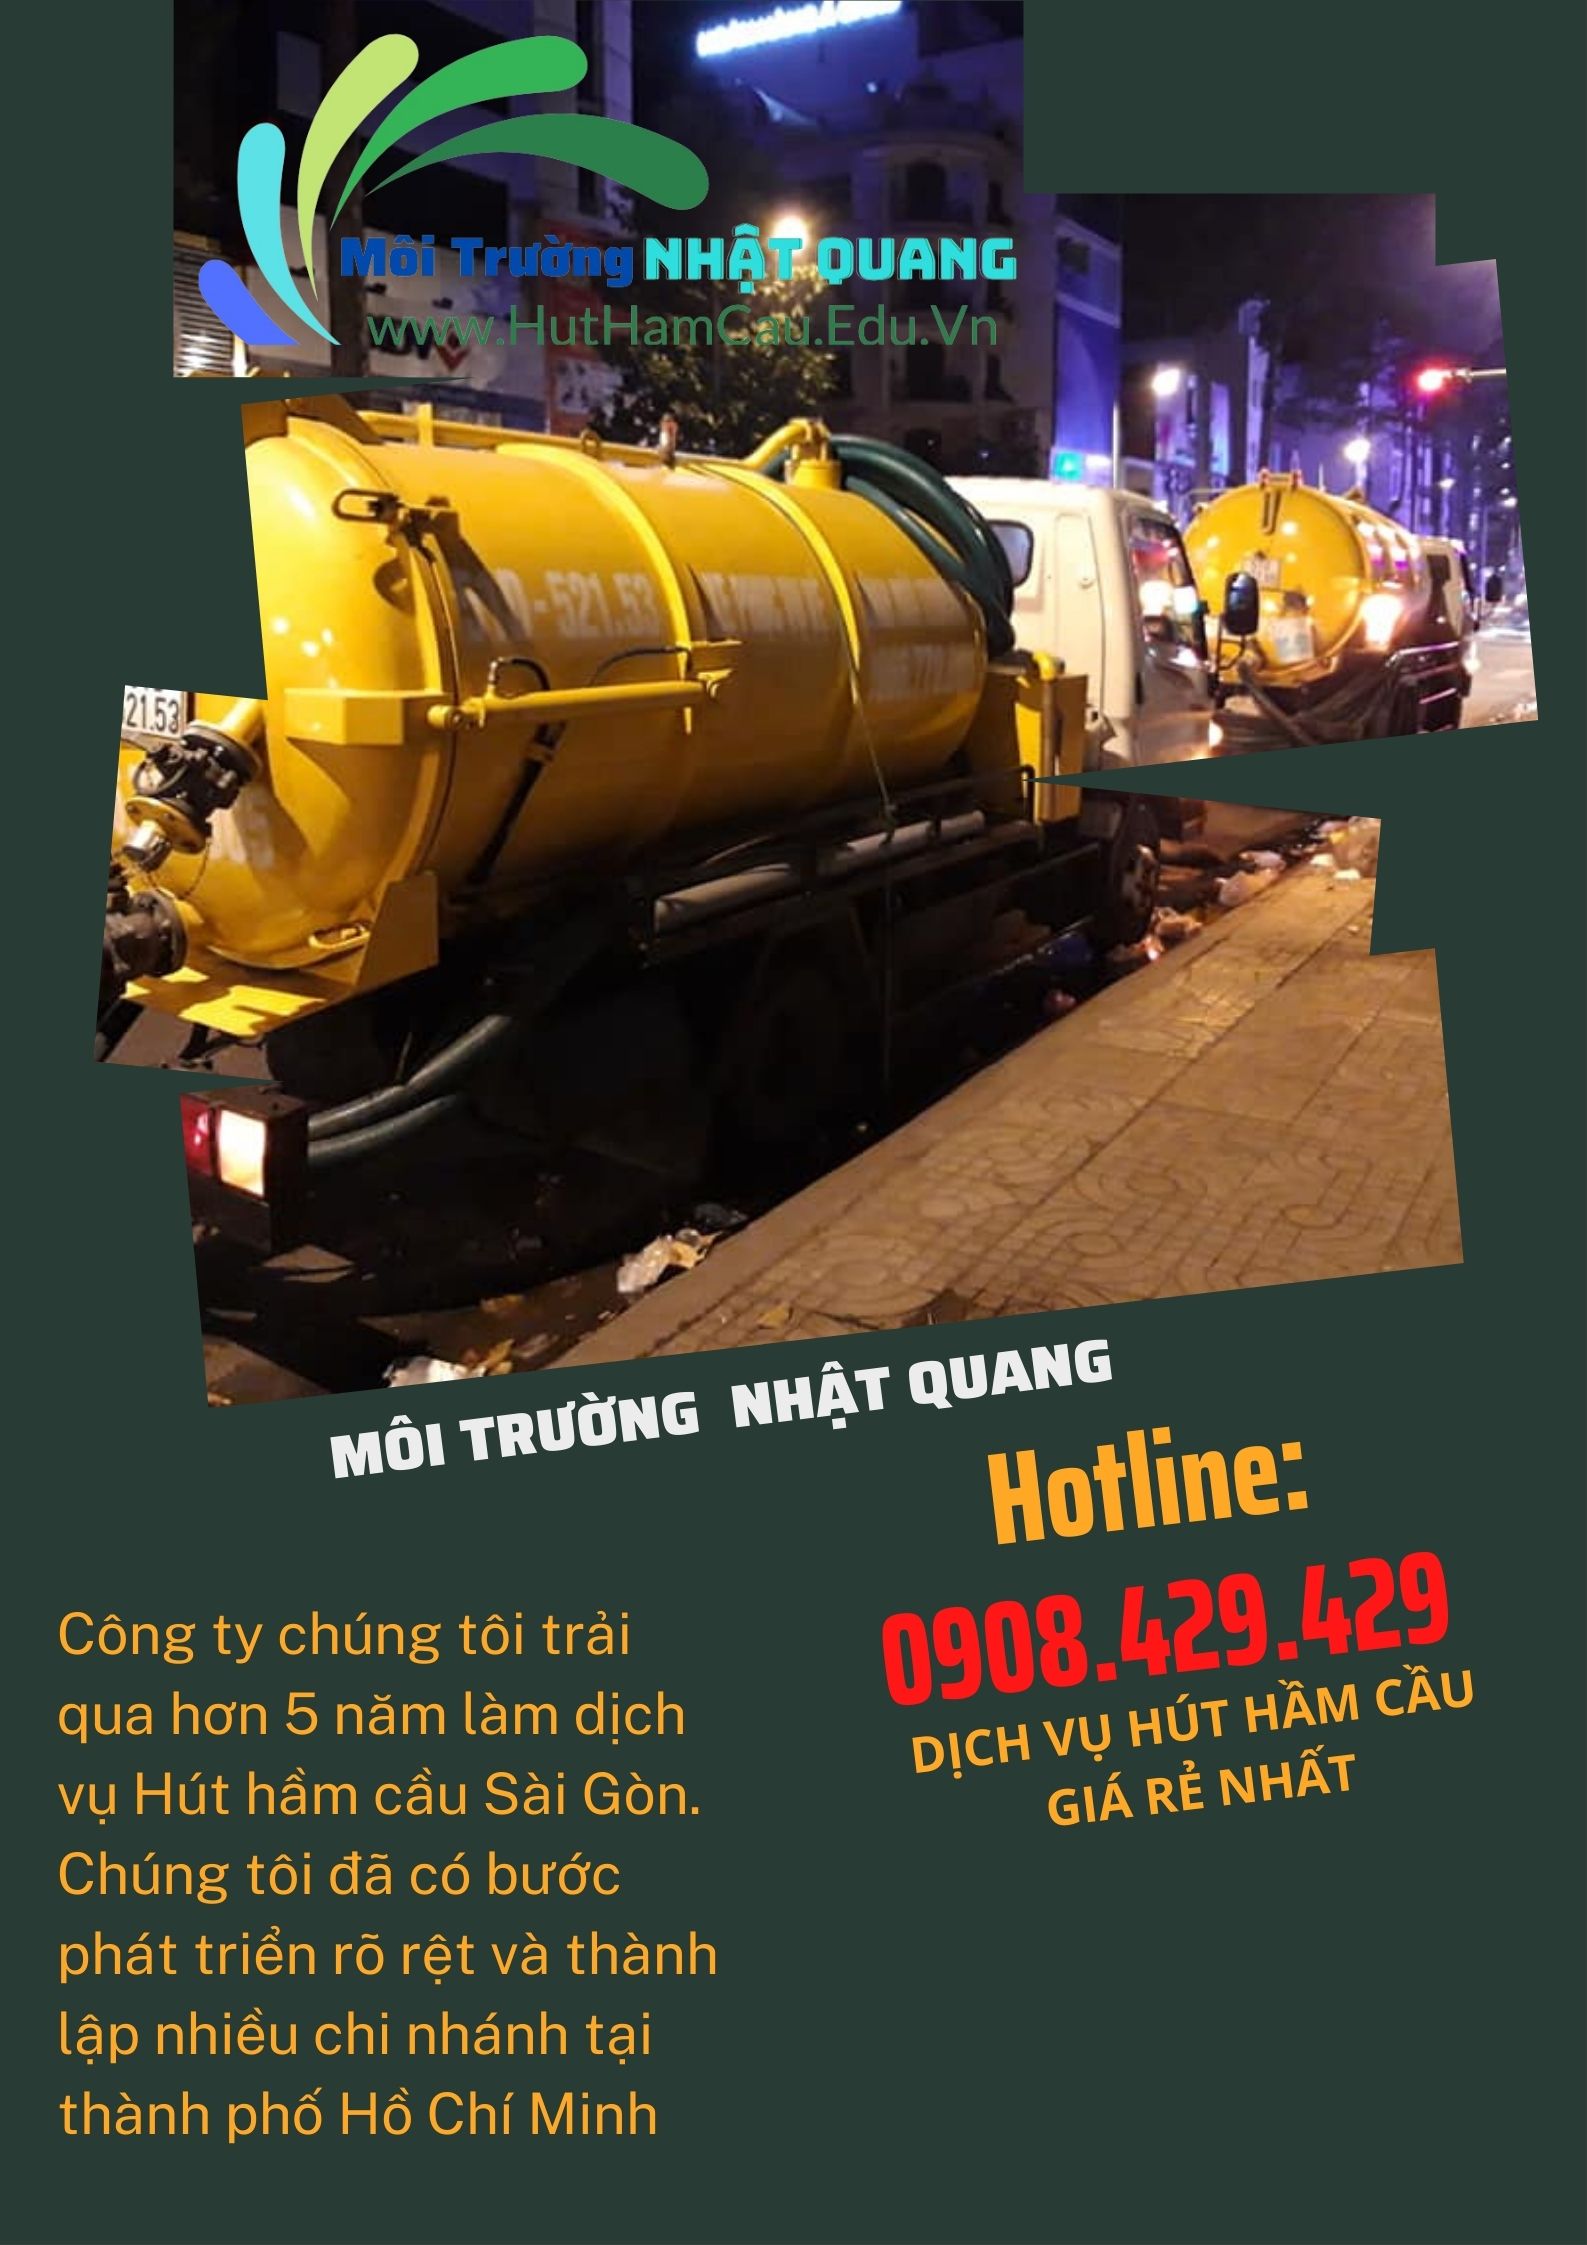 Công ty chúng tôi trải qua hơn 5 năm làm dịch vụ Hút hầm cầu Sài Gòn